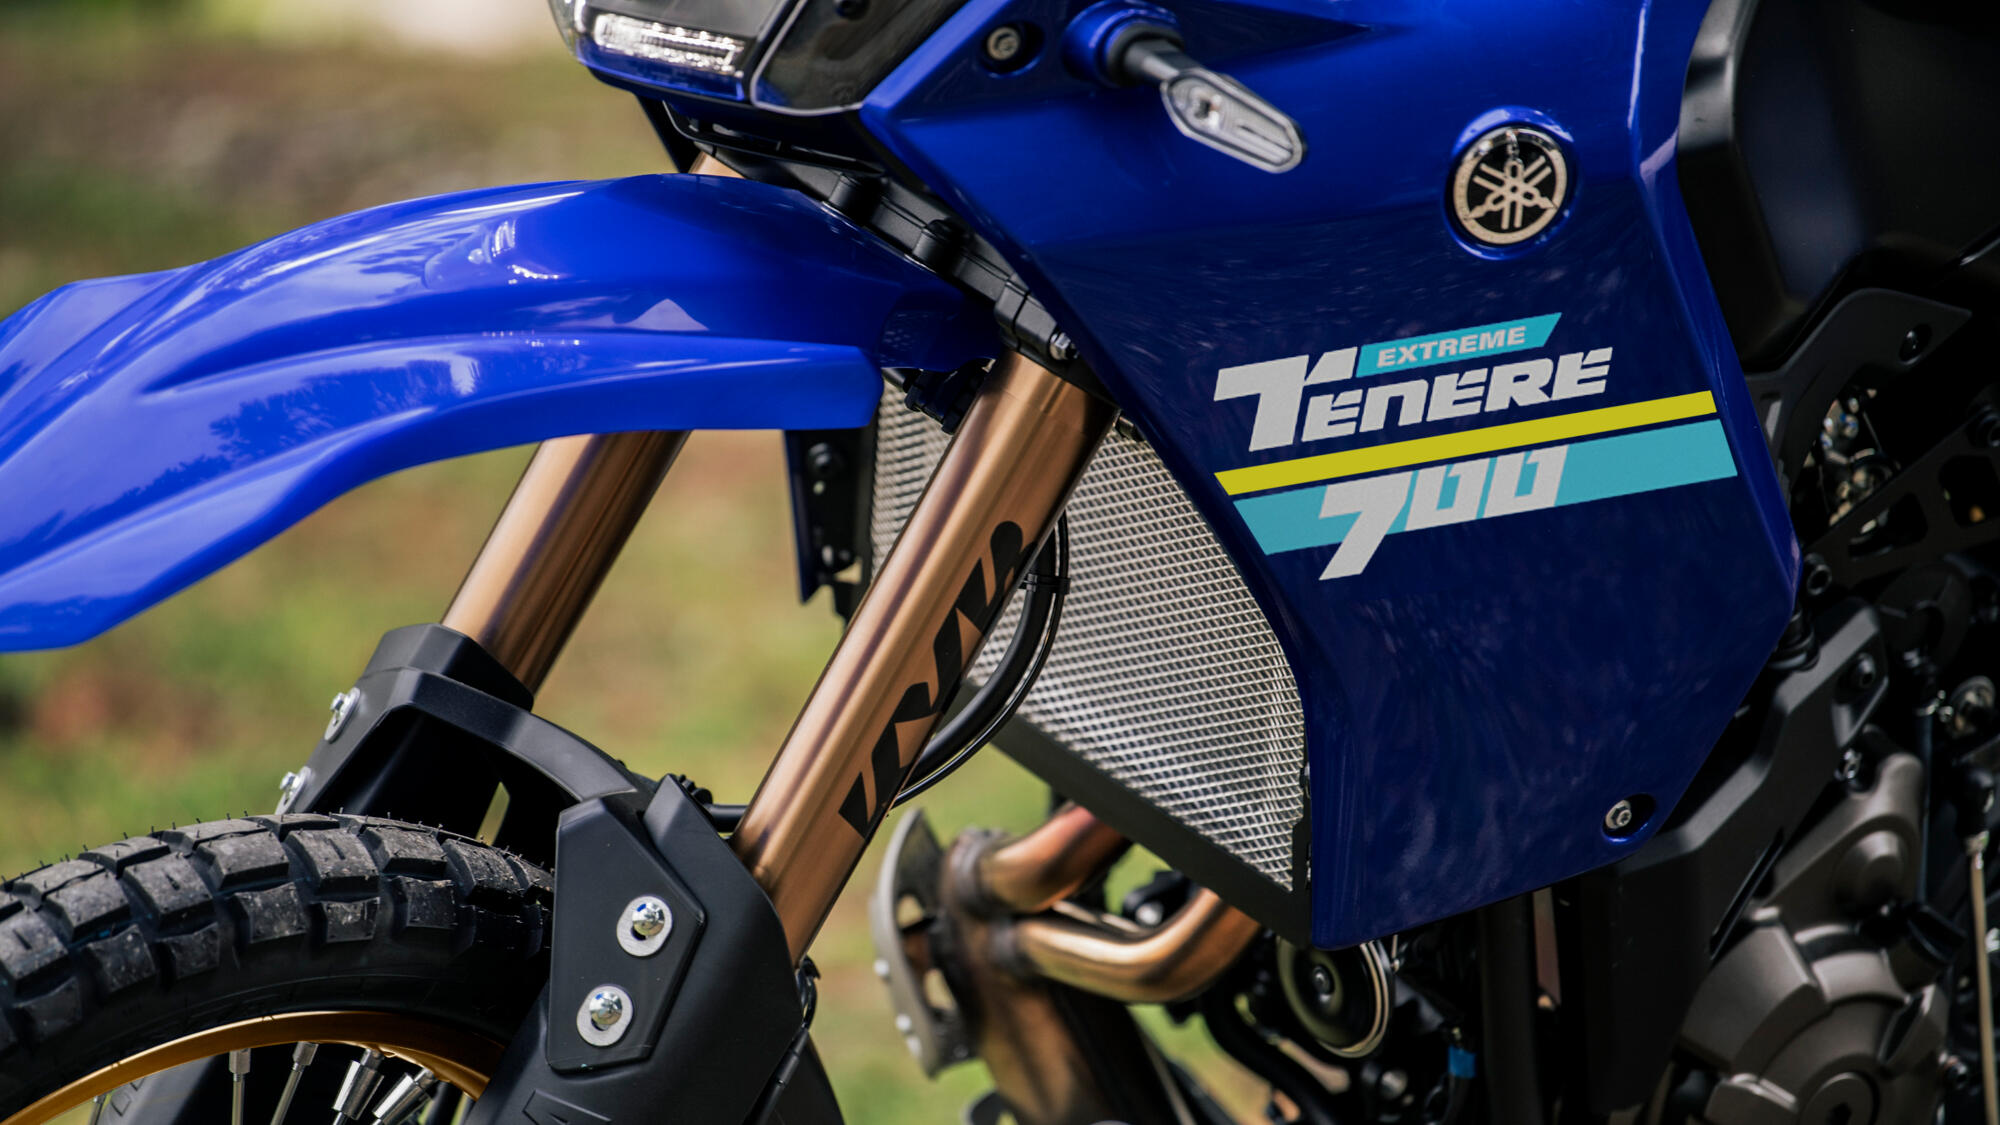 Vista enfocada en el carenado lateral de la Yamaha Ténéré 700 Extreme, mostrando detalles y acabados.